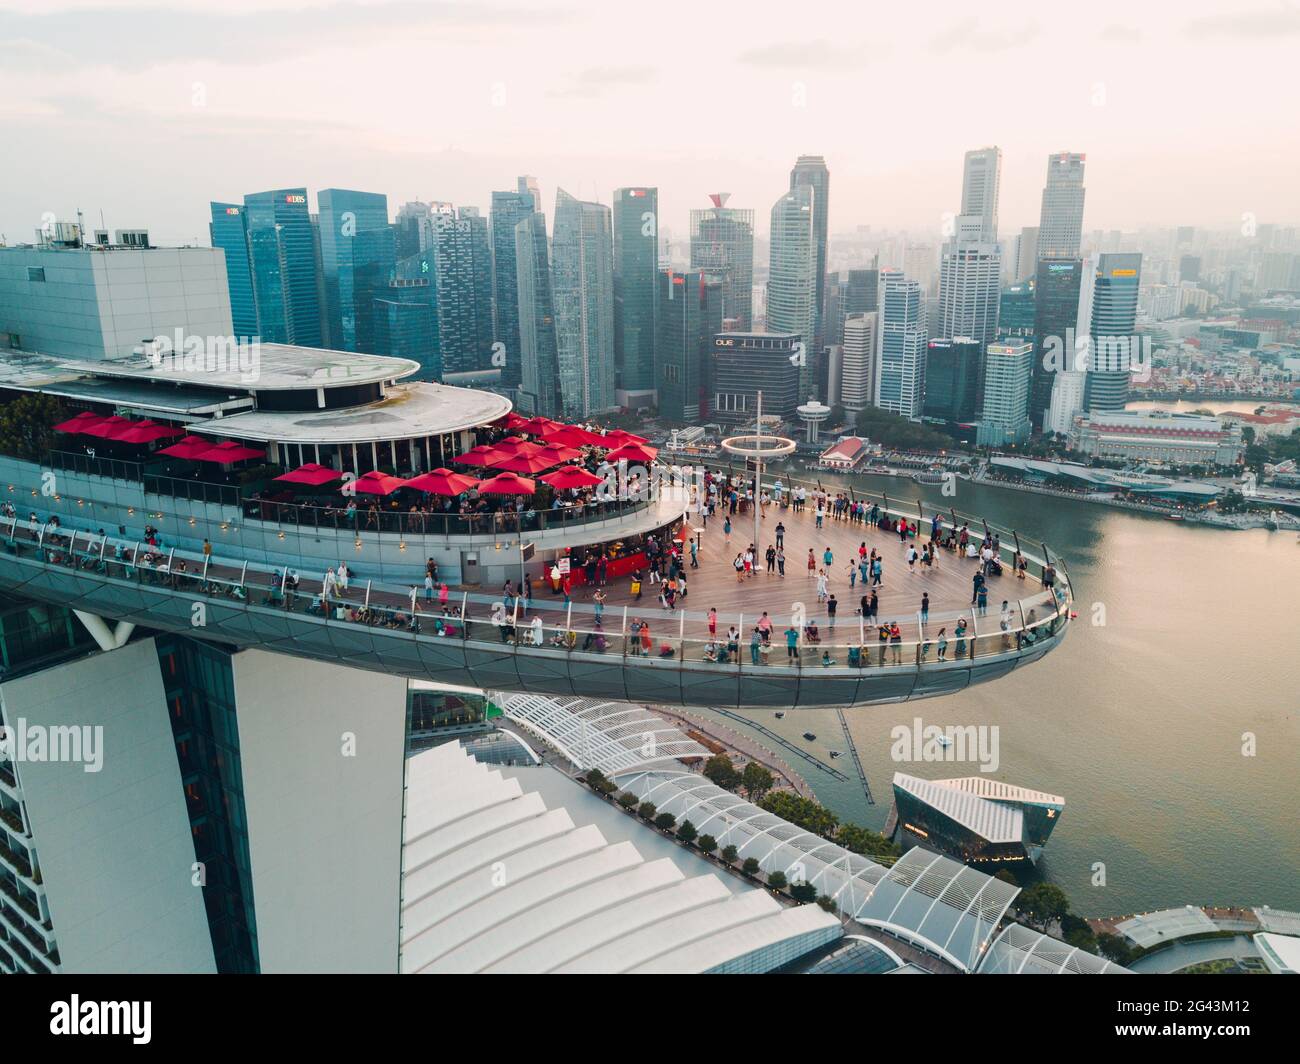 Février 26, 2018 : Singapour, Marina Bay Sands Hôtel de luxe. Quadrupter point de vue. Banque D'Images